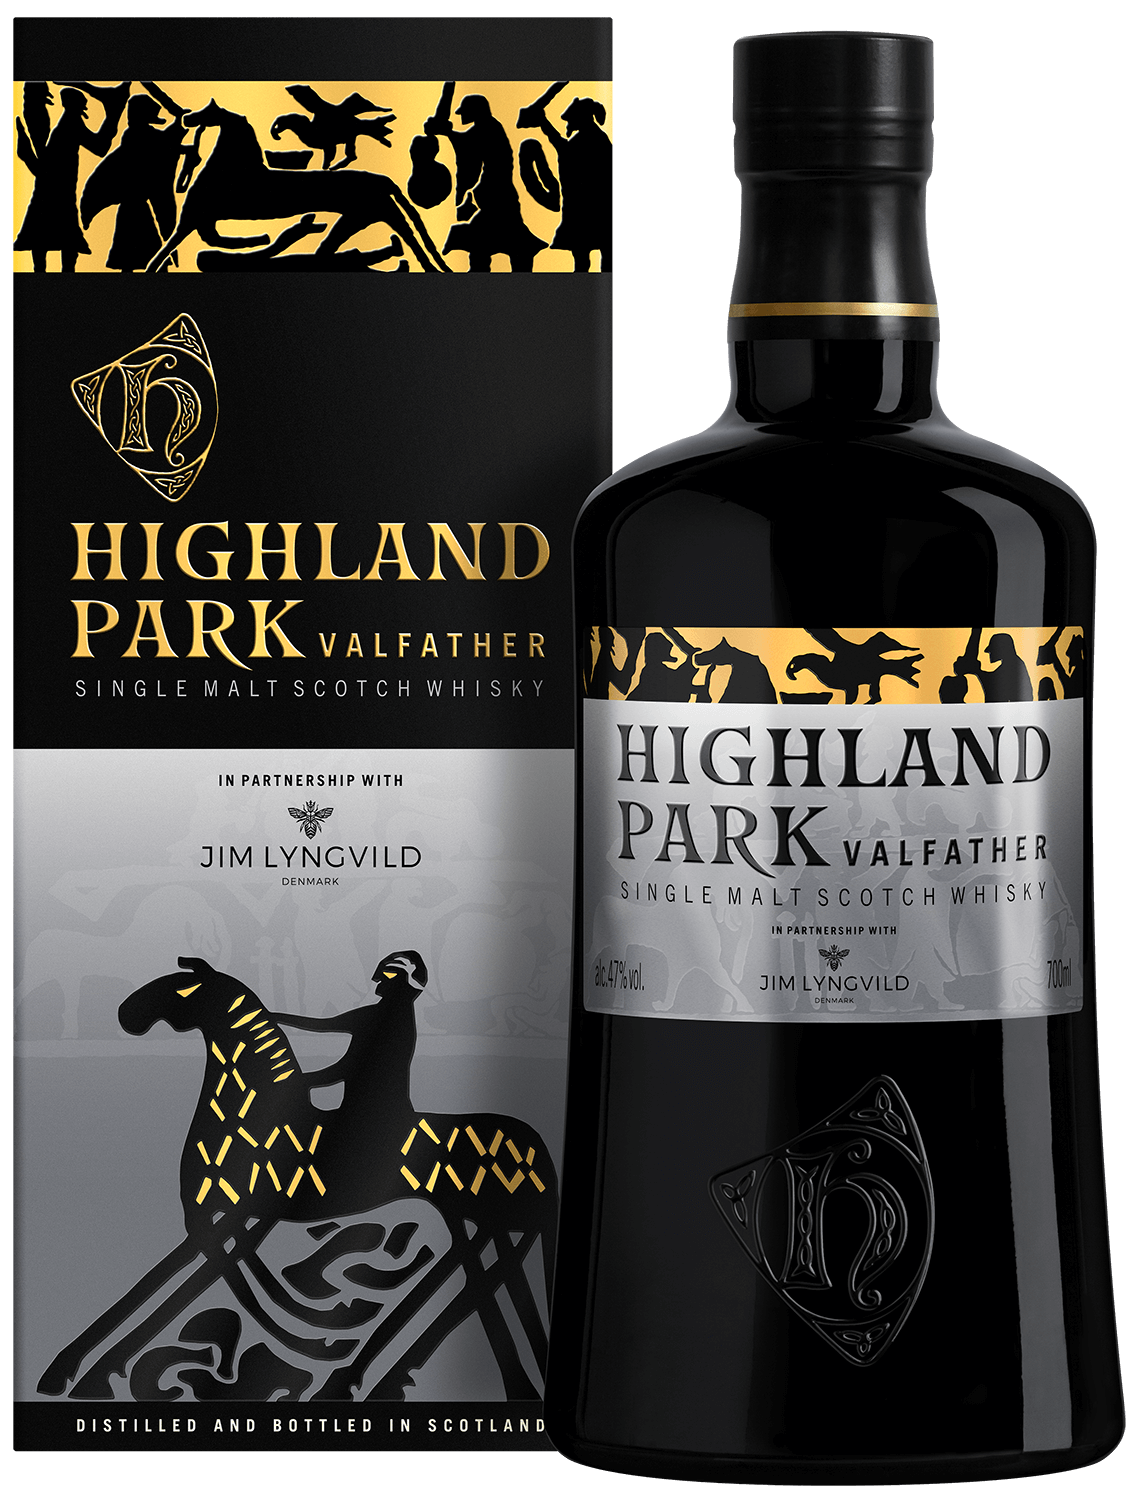 цена Highland Park Valfather single malt scotch whisky